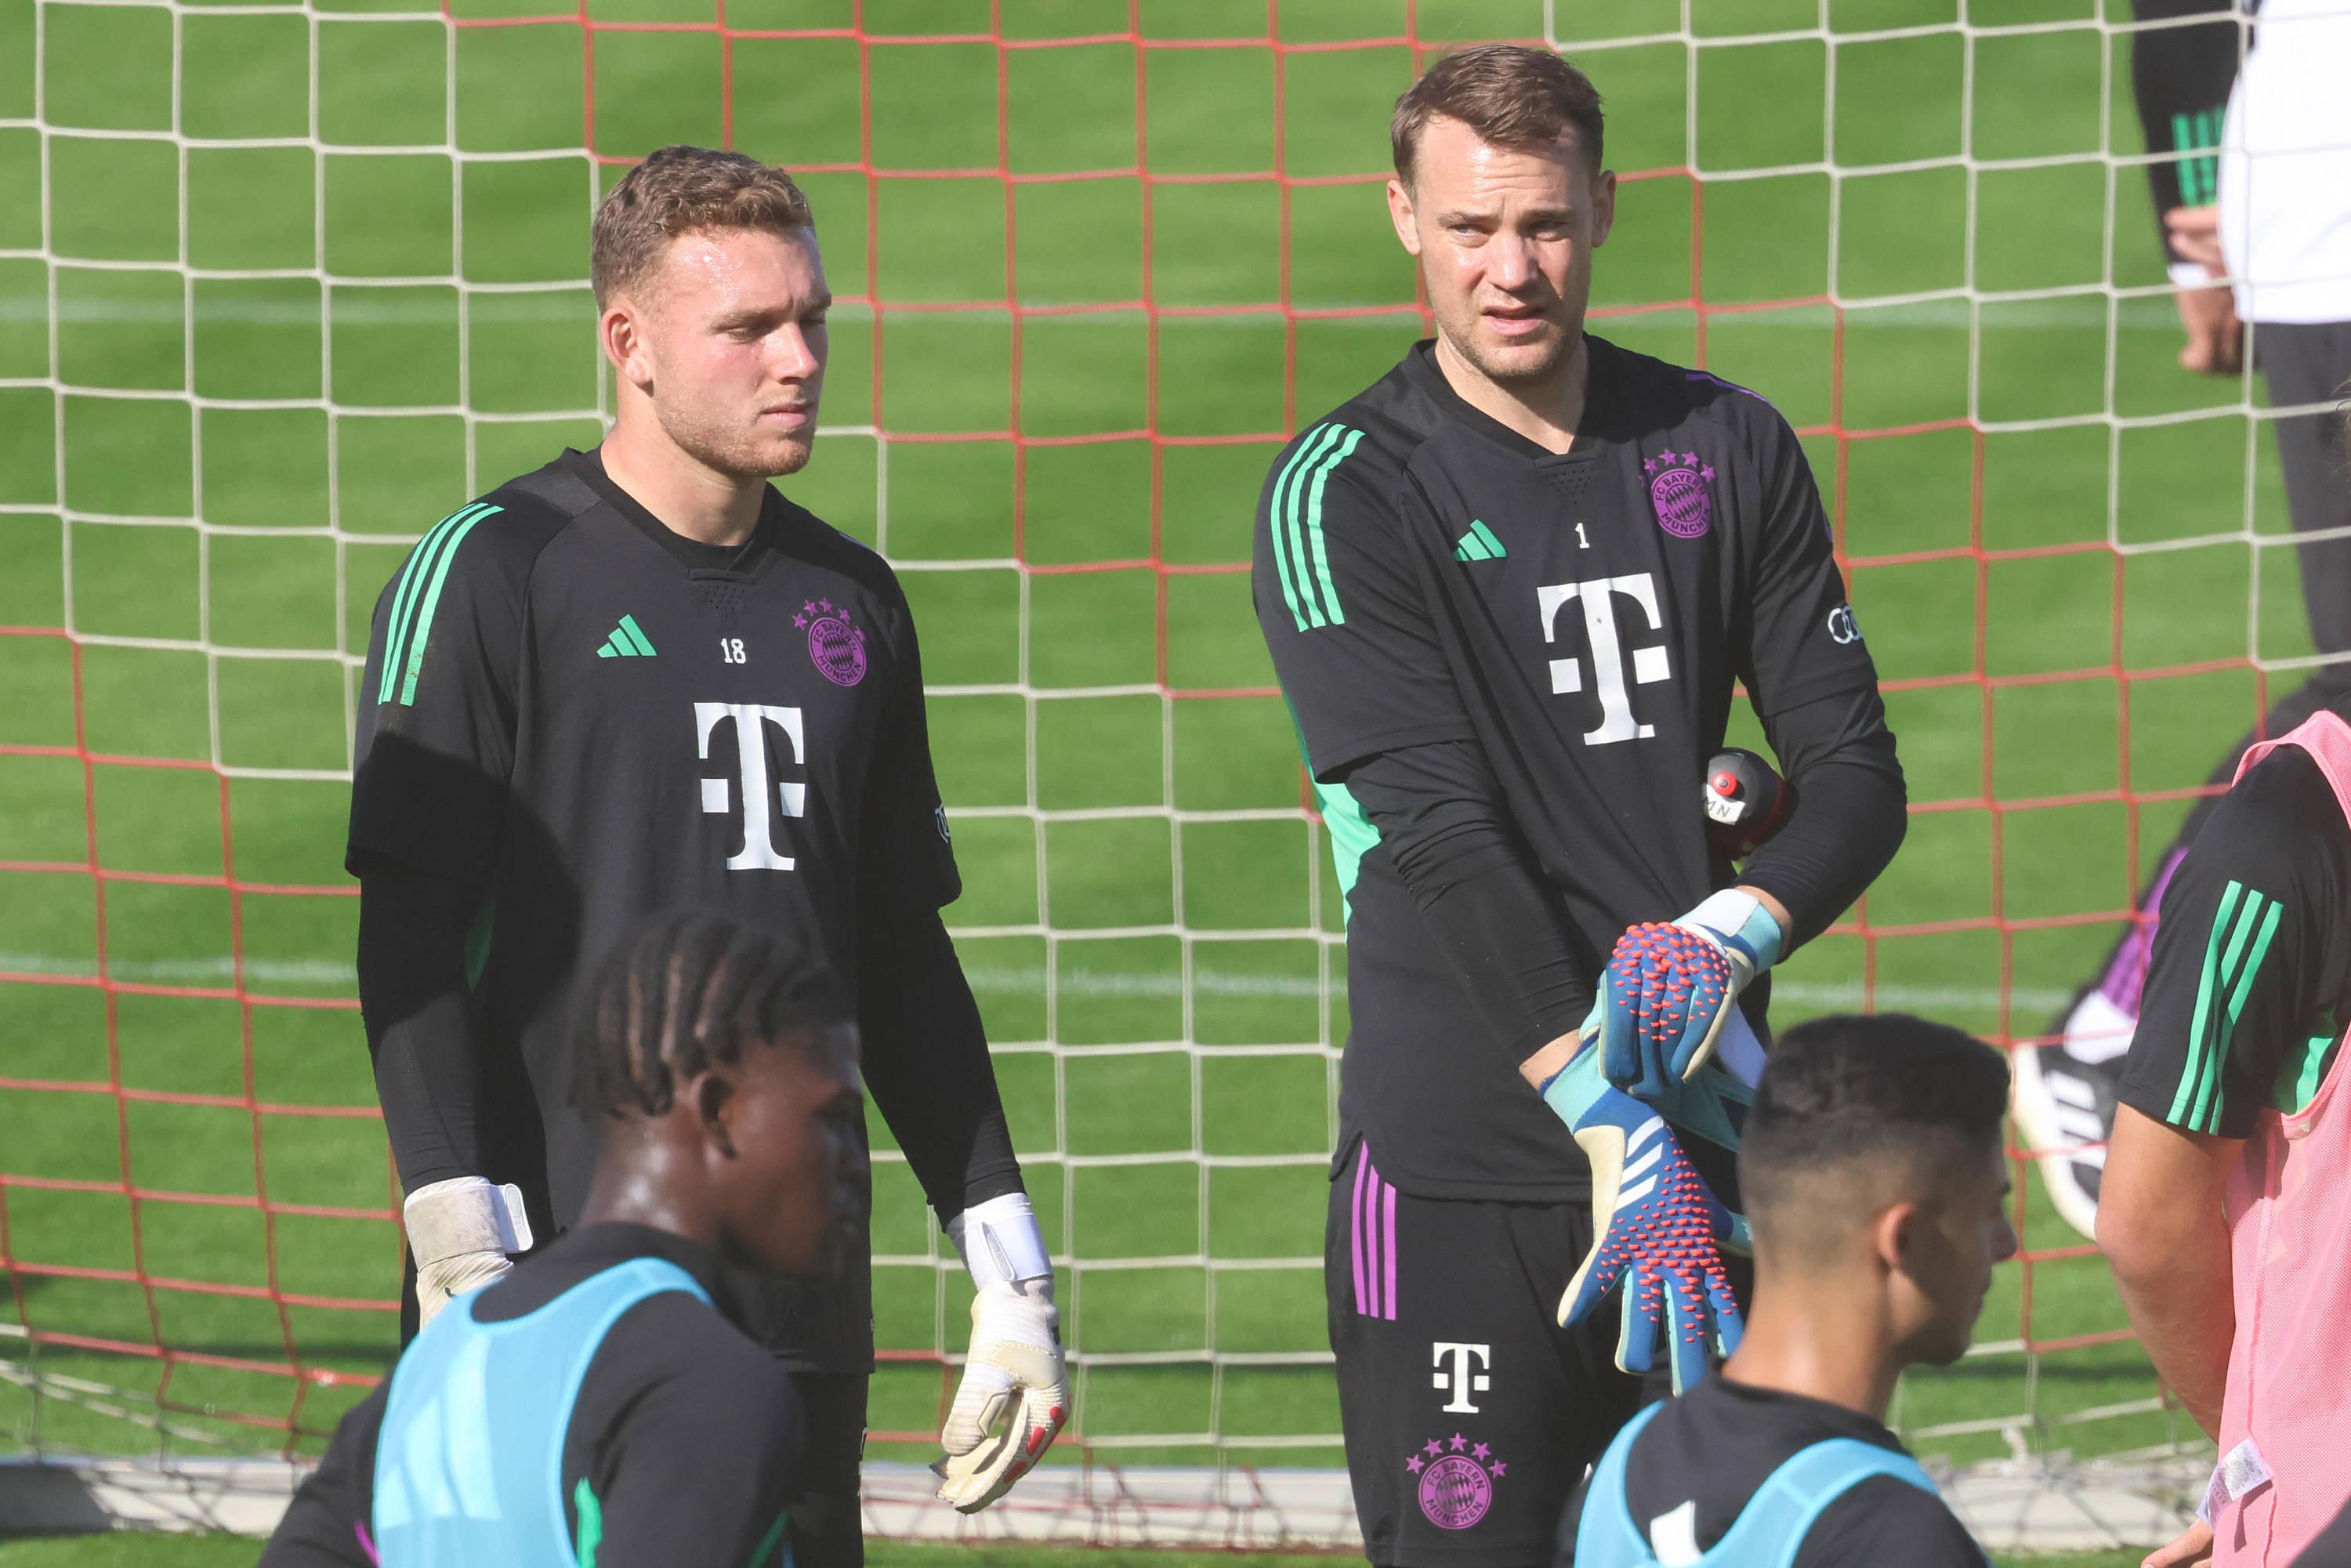 Bayern Munich: Peretz, Neuer’s understudy, is injured